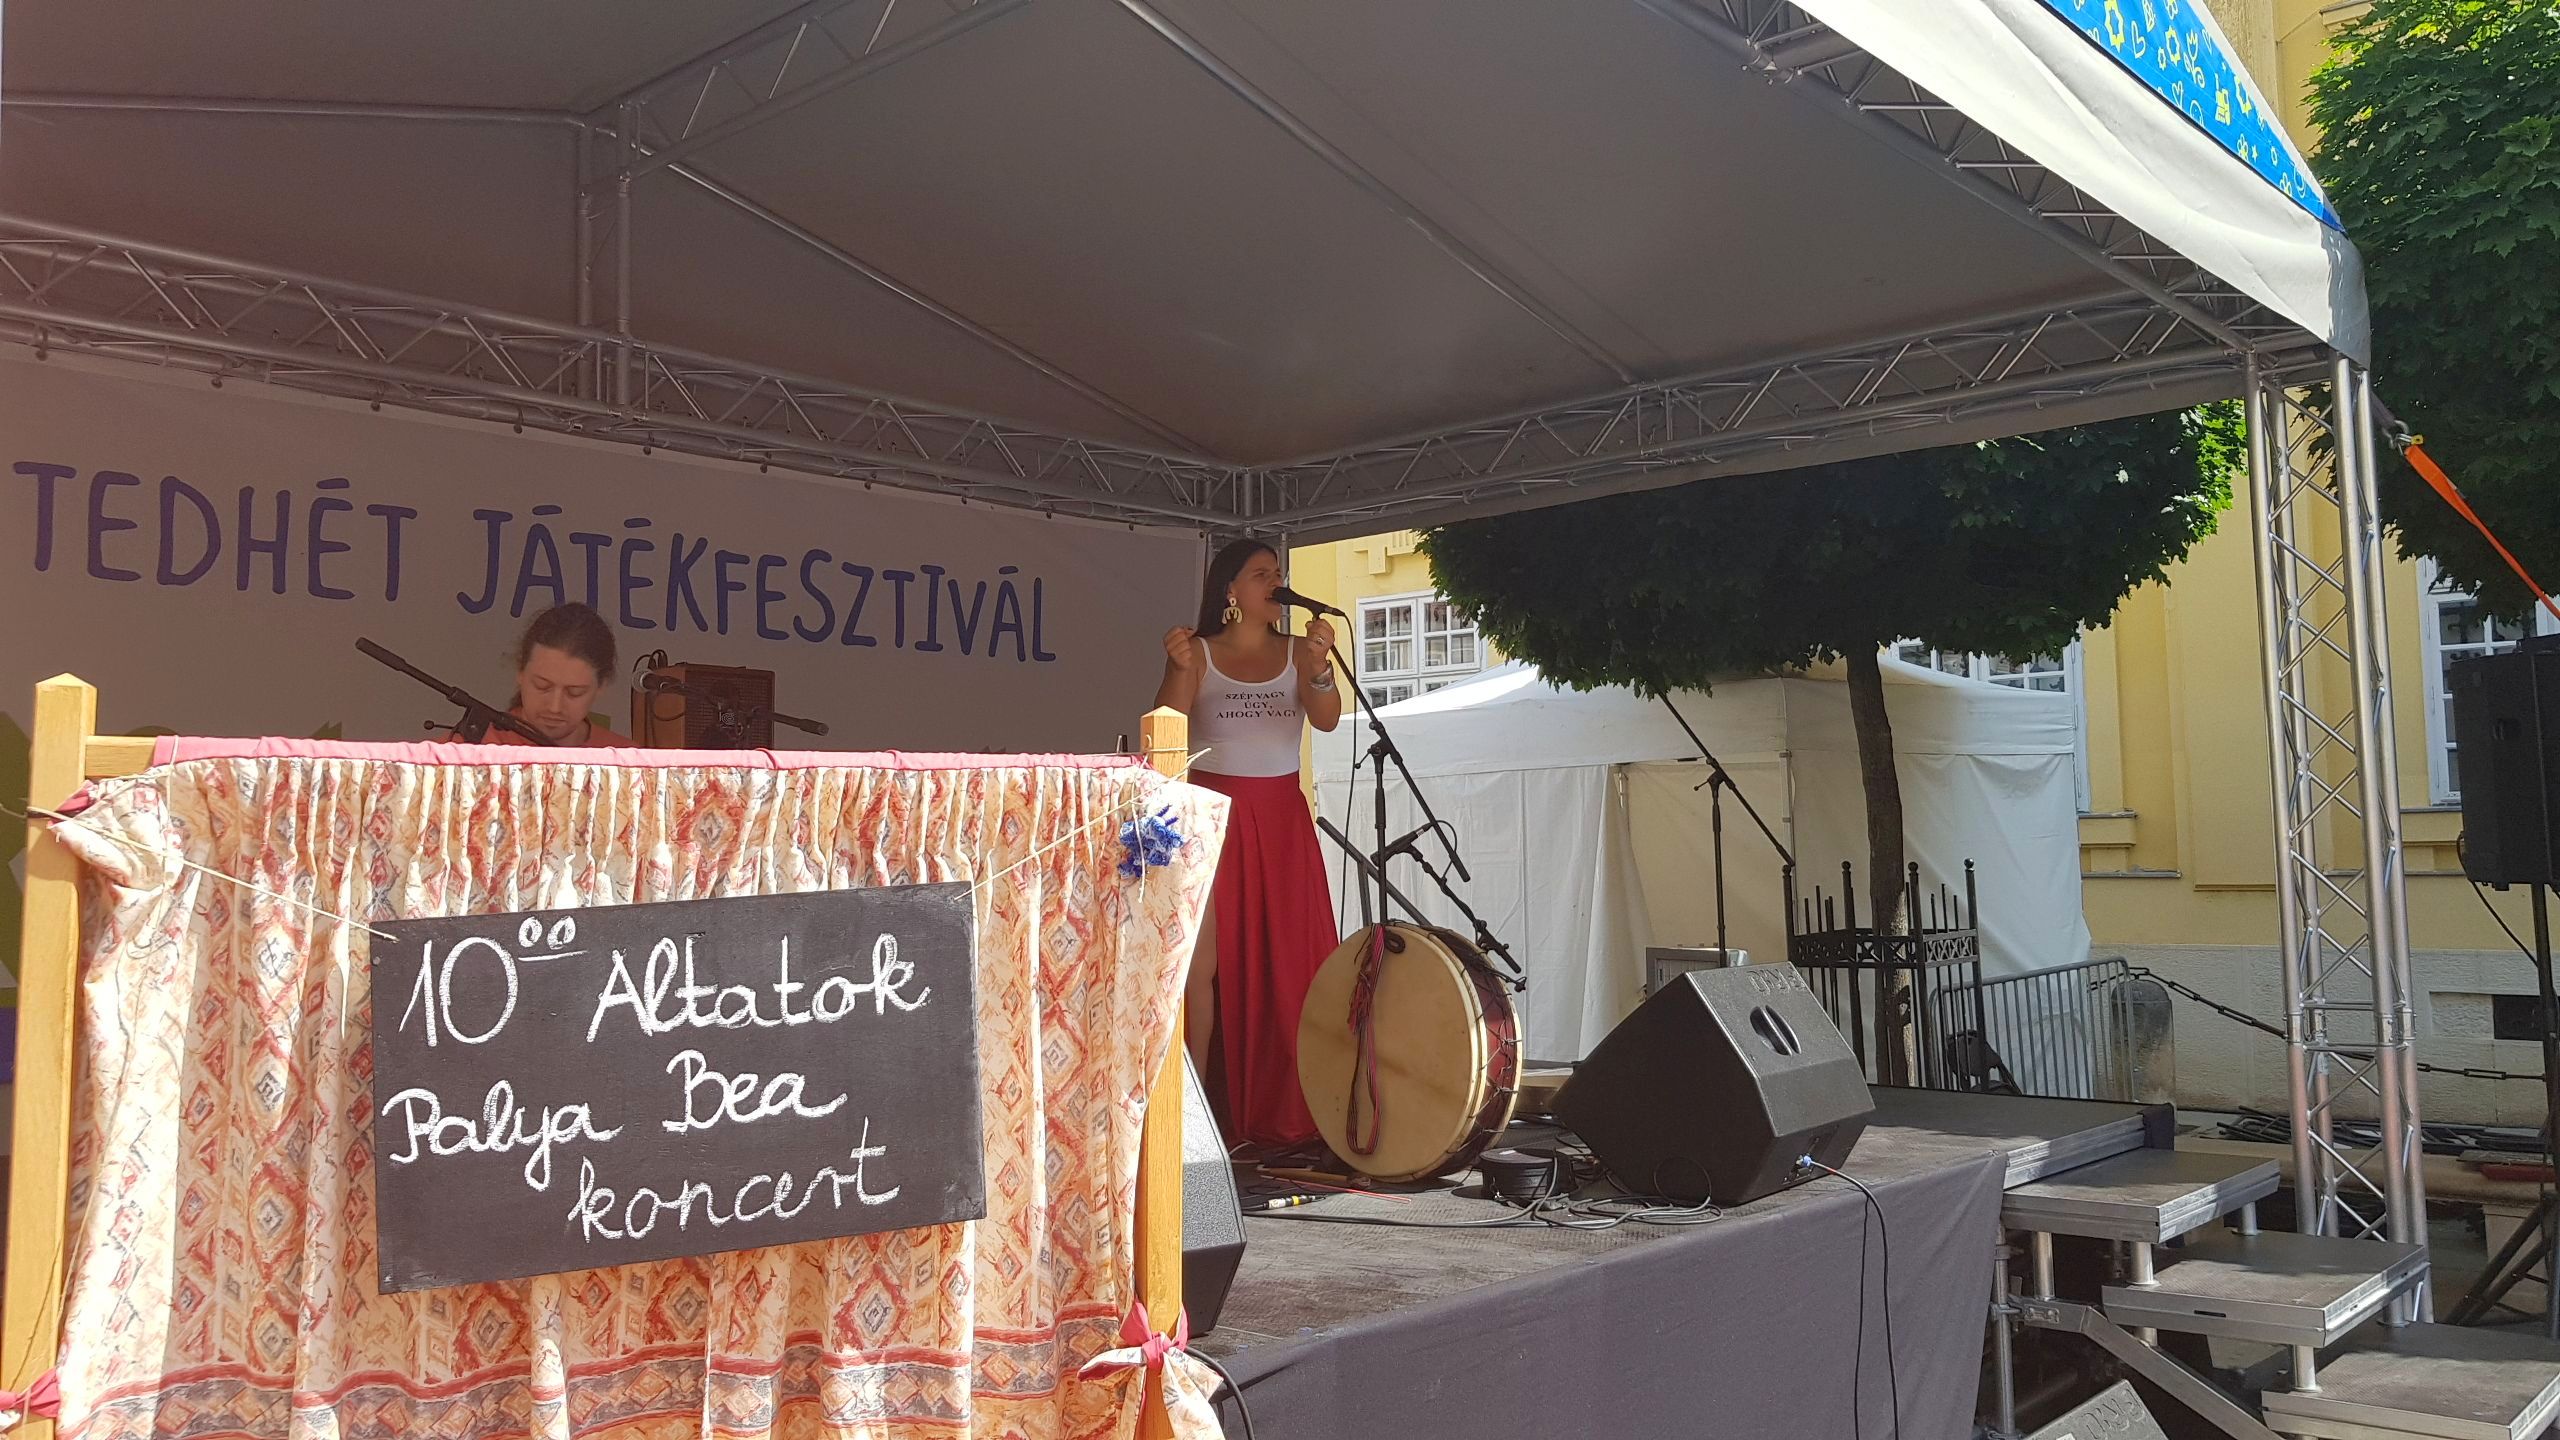 Palya Bea koncerttel folytatódott vasárnap a Hetedhét Játékfesztivál